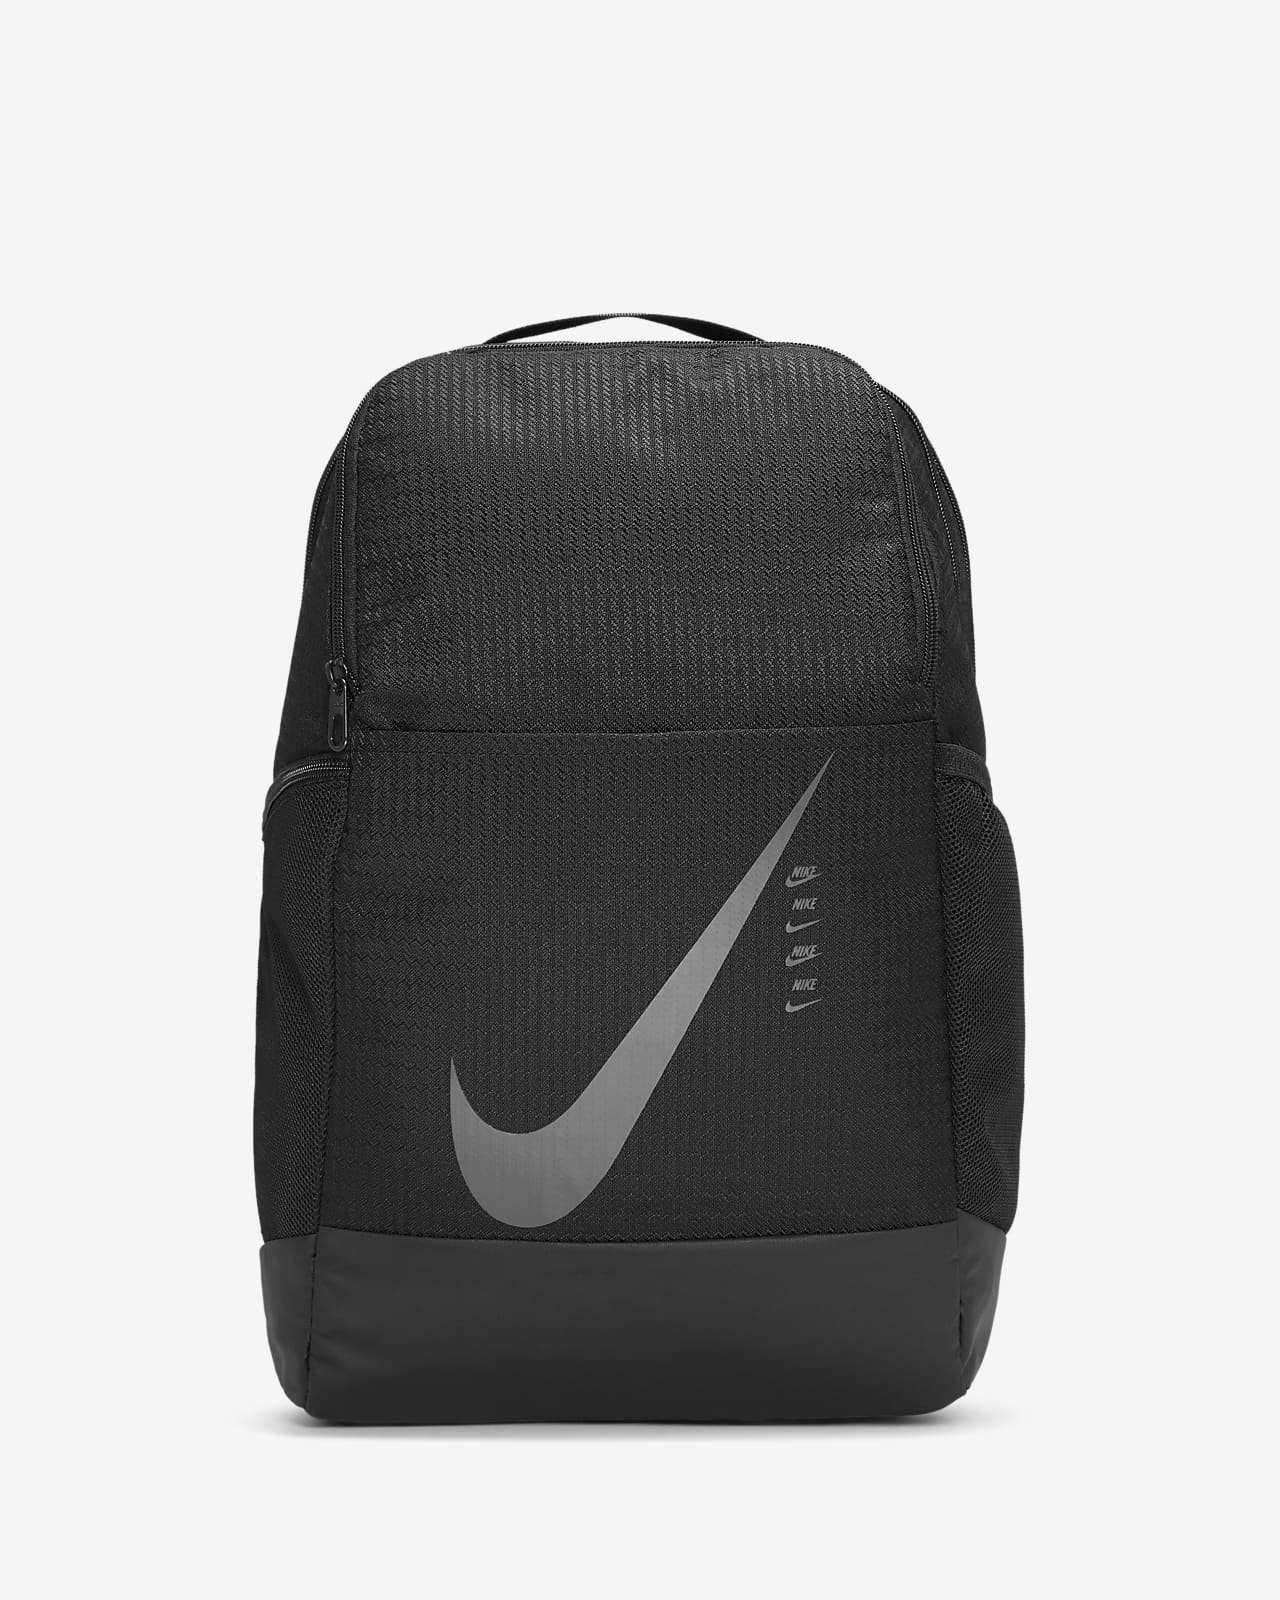 jansport shotwell backpack